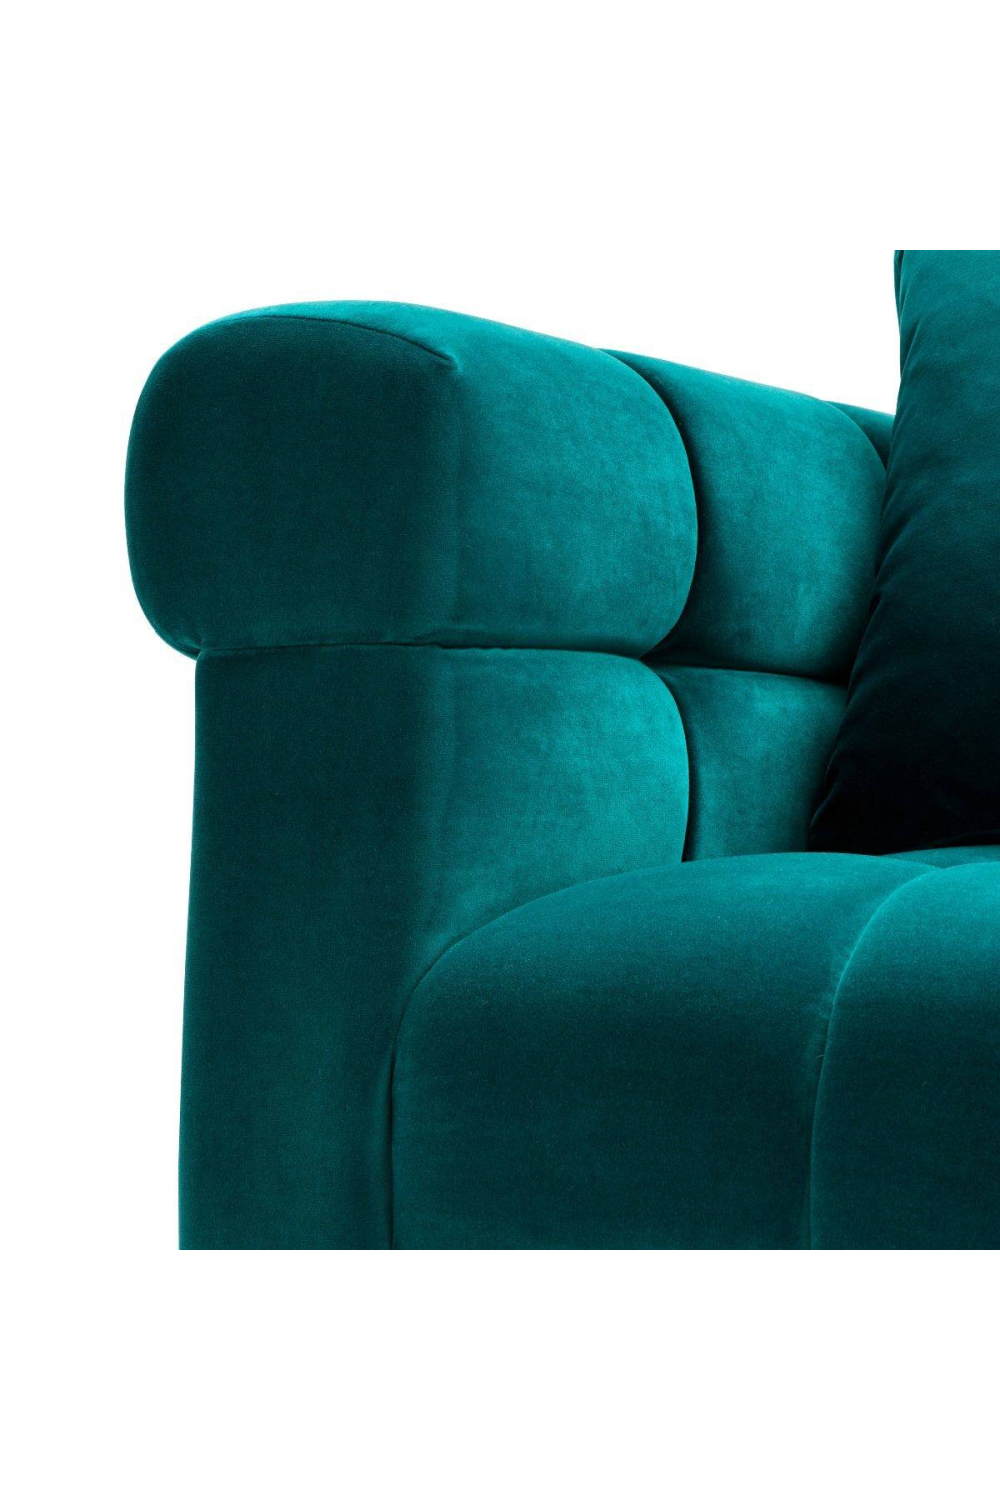 Tufted Sea Green Chair | Eichholtz Aurelio | Oroa.com